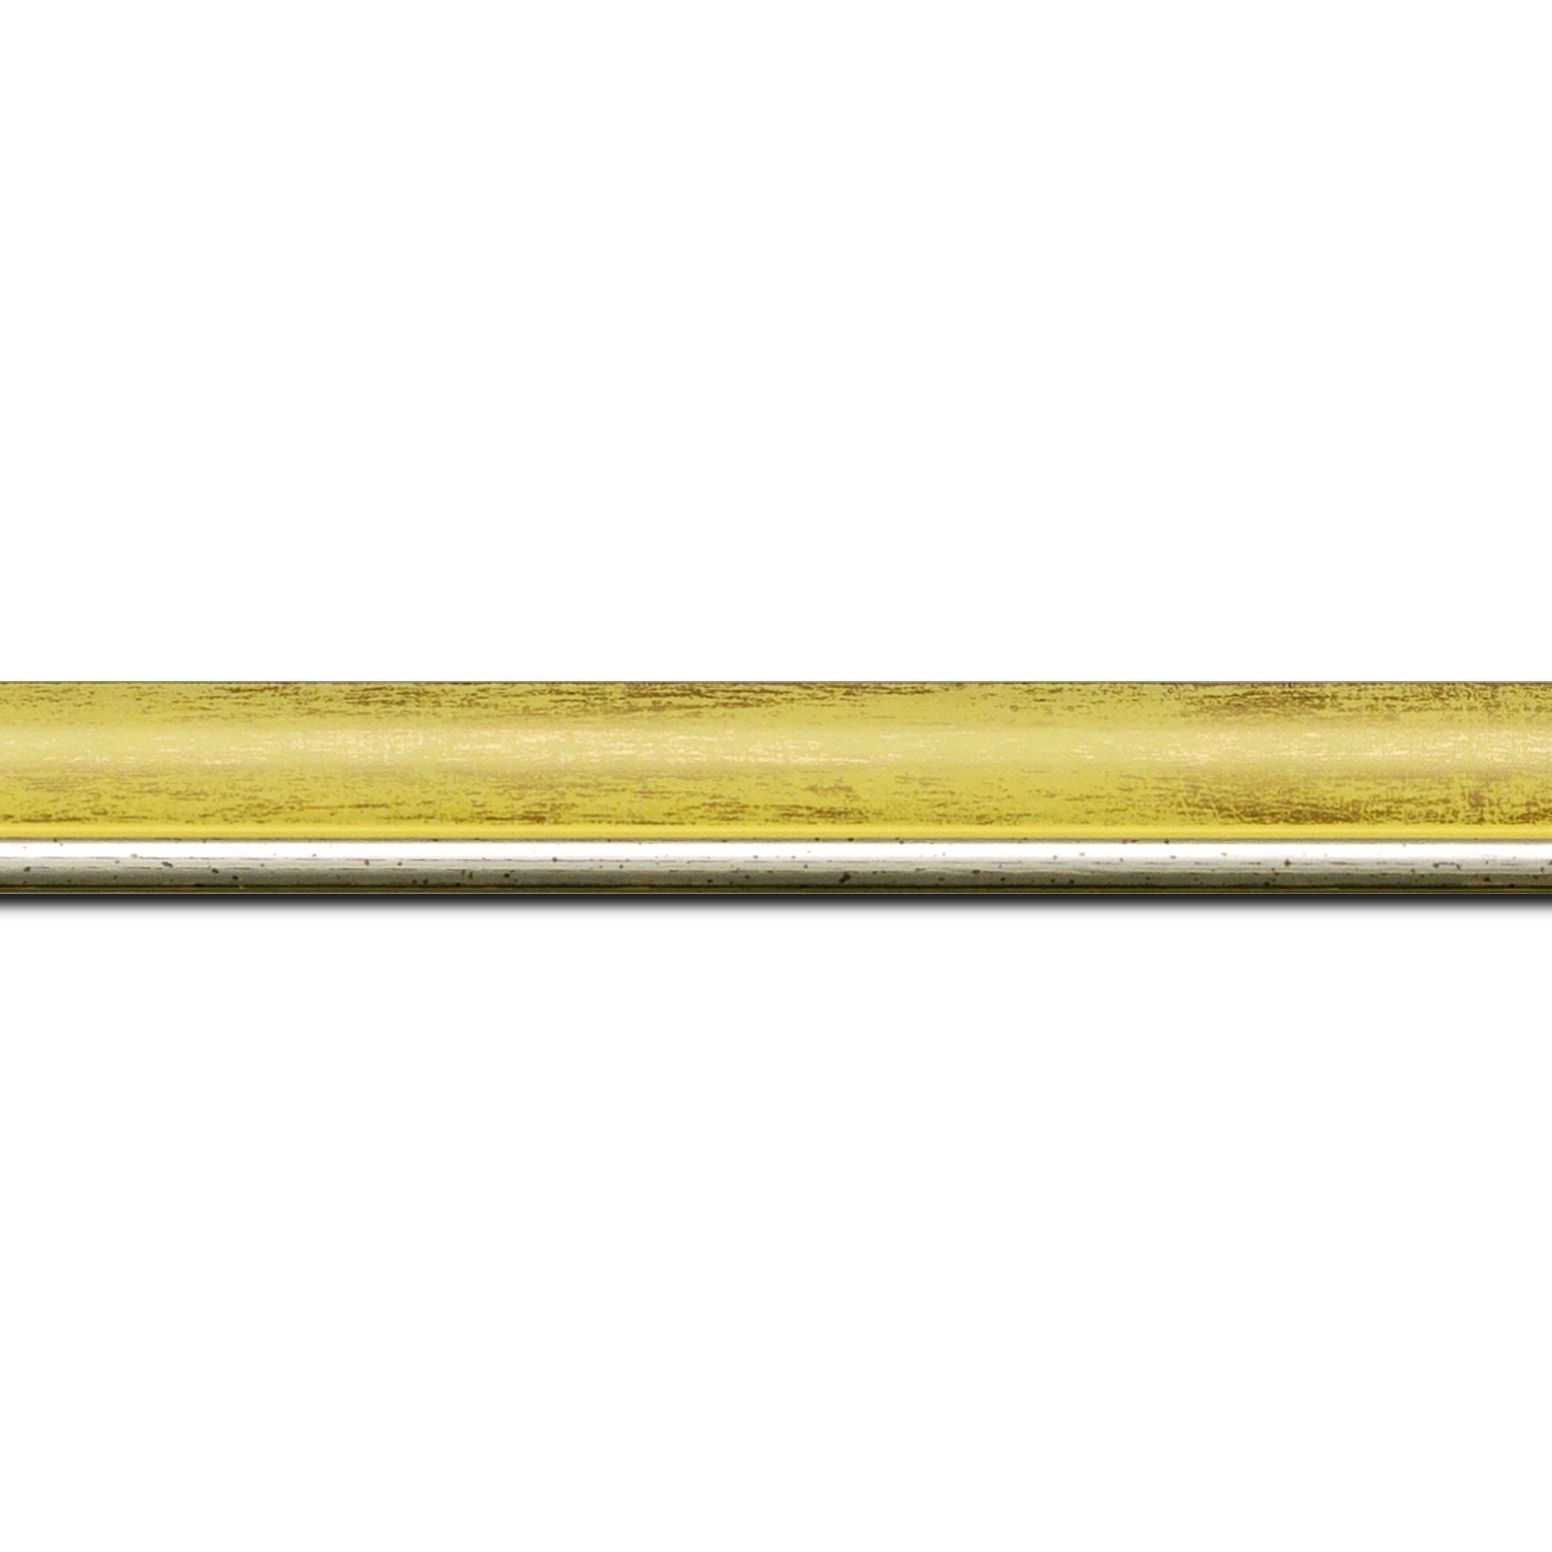 Pack par 12m, bois profil arrondi largeur 2.1cm  couleur  jaune fond or filet argent chaud (longueur baguette pouvant varier entre 2.40m et 3m selon arrivage des bois)